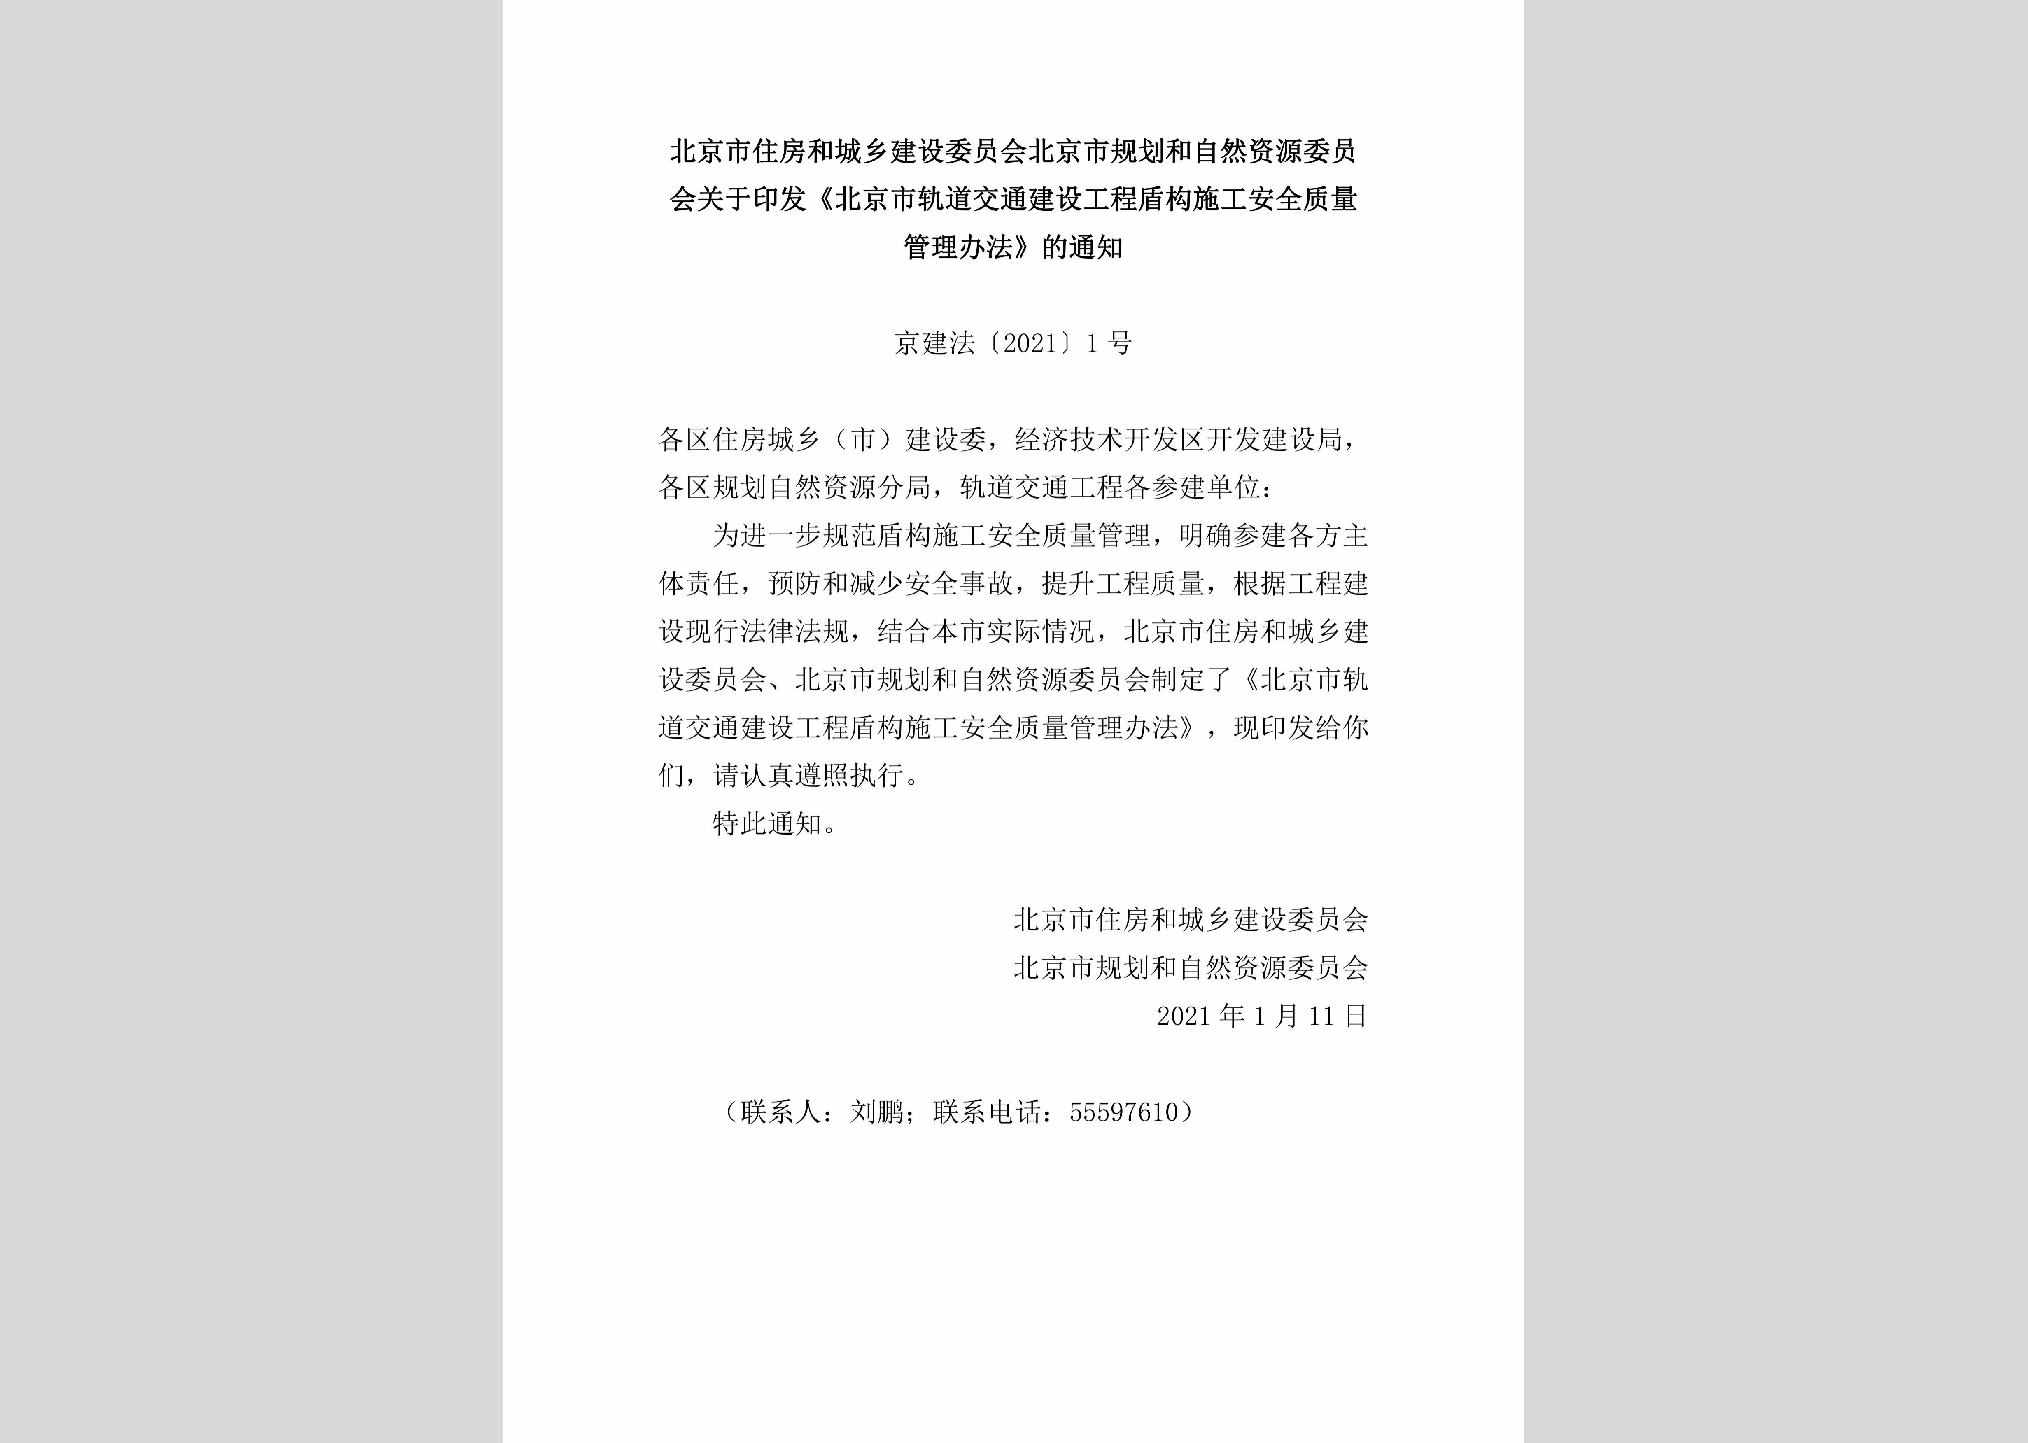 京建法[2021]1号：北京市住房和城乡建设委员会北京市规划和自然资源委员会关于印发《北京市轨道交通建设工程盾构施工安全质量管理办法》的通知